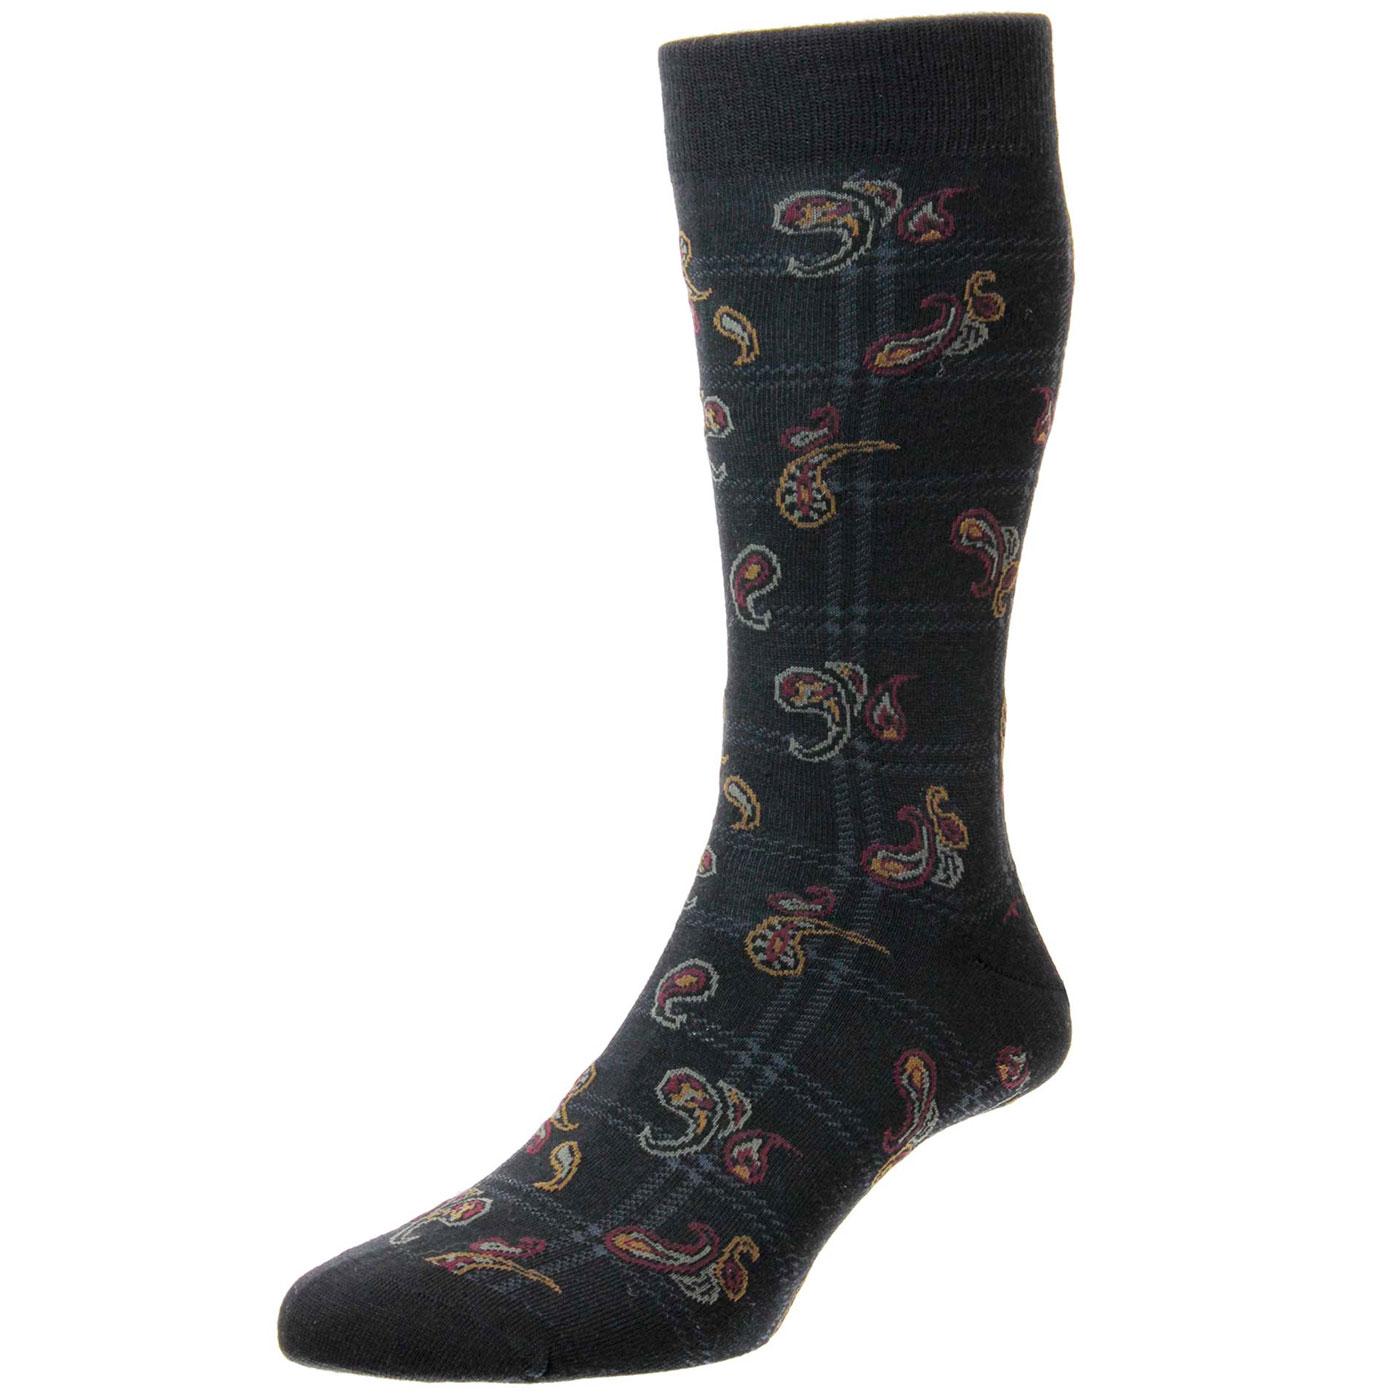 PANTHERELLA Johnson Made in England Paisley Check Socks